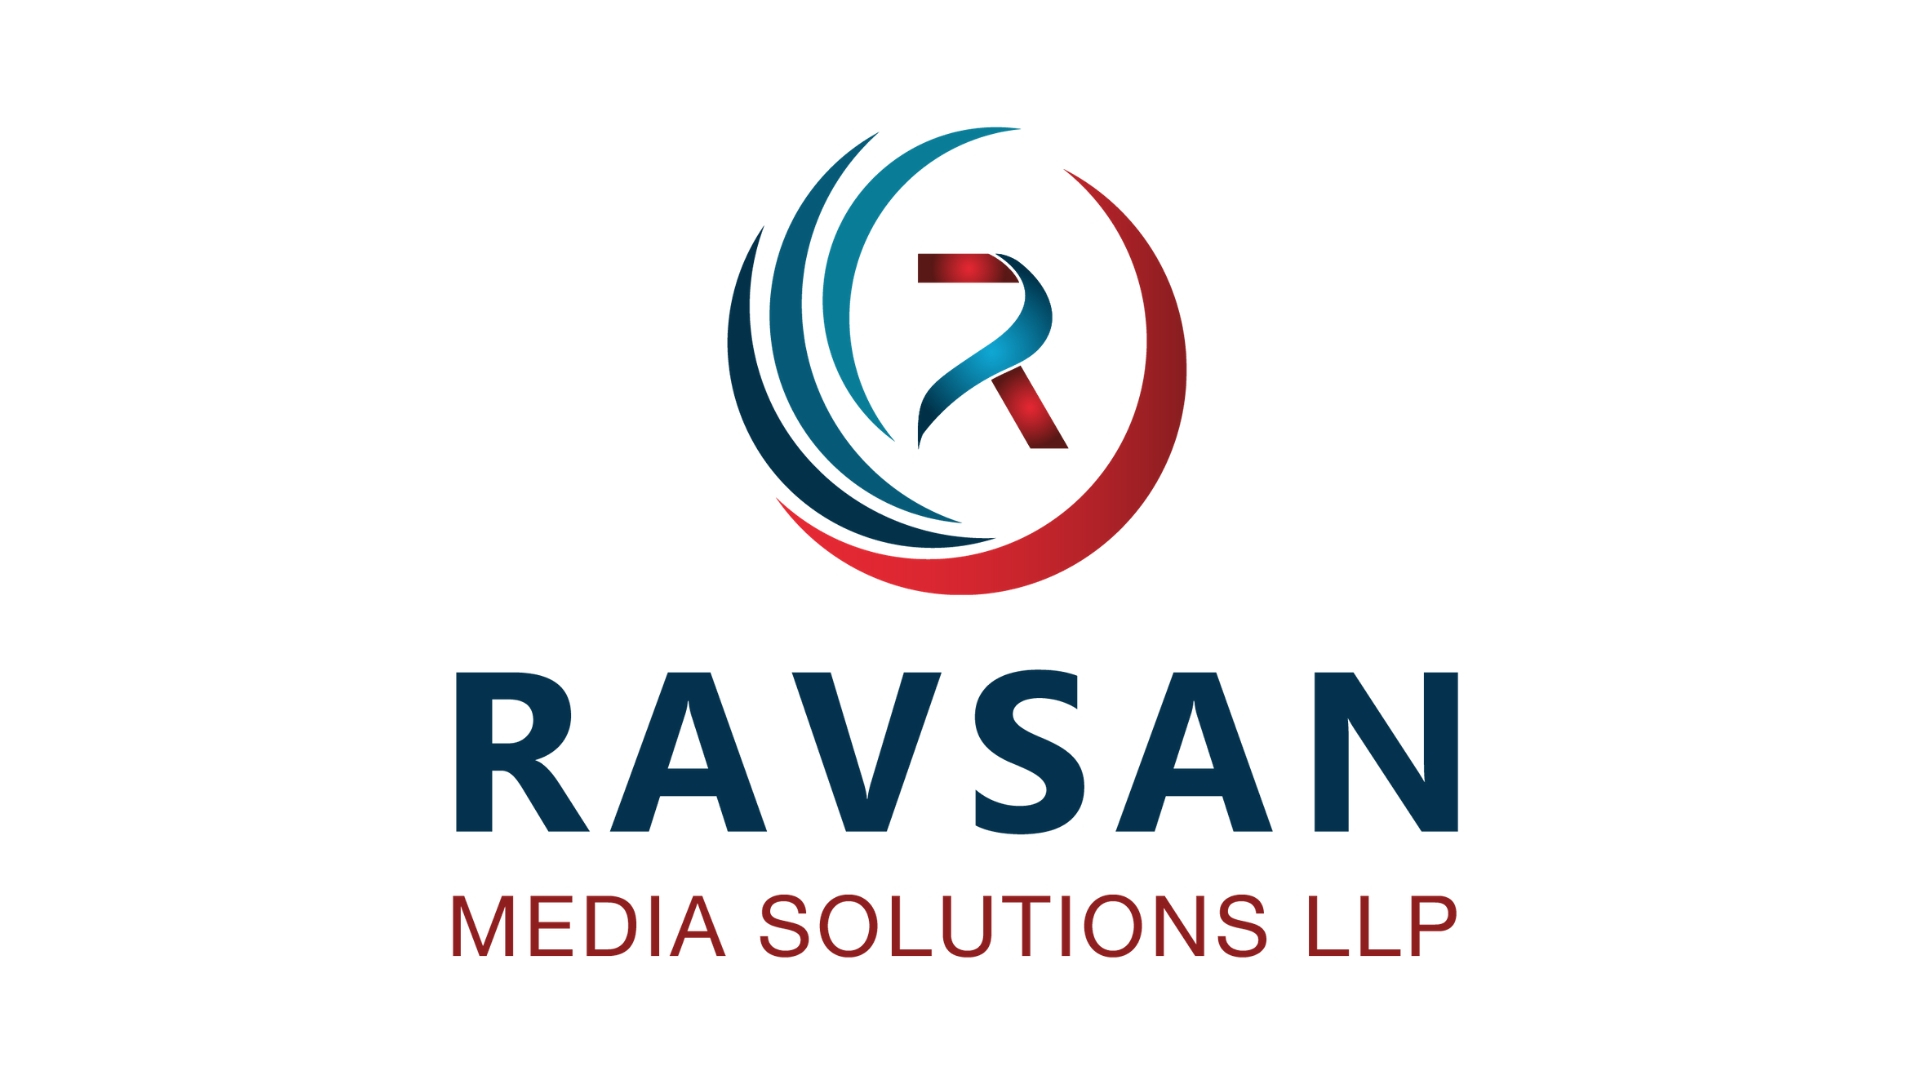 Ravsan Media Solutions